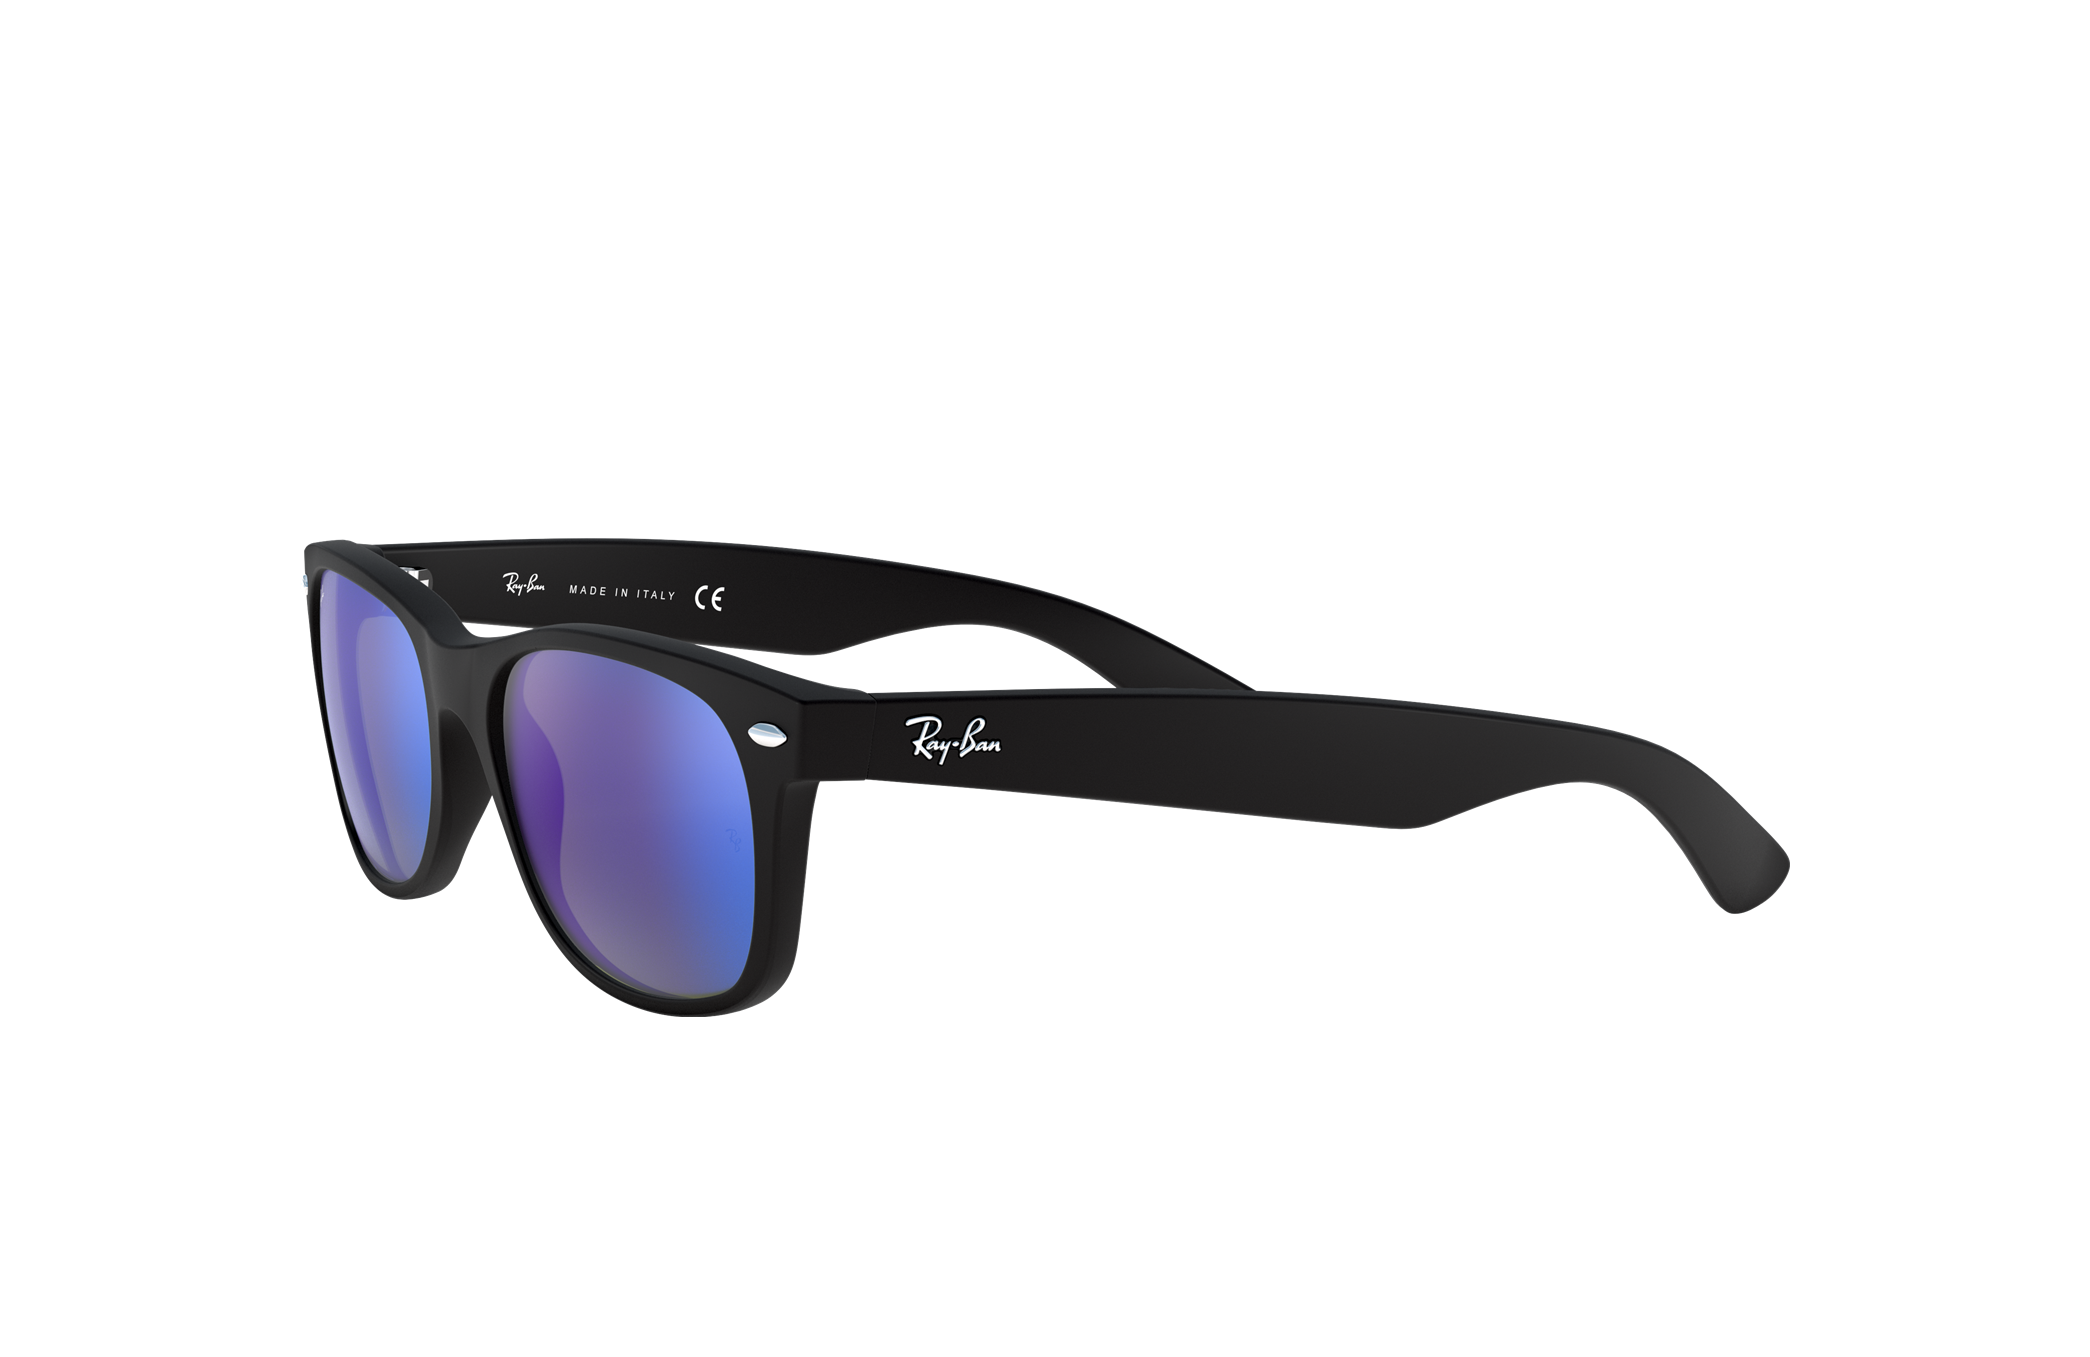 Ray-Ban sunglasses New Wayfarer RB-2132 902/58